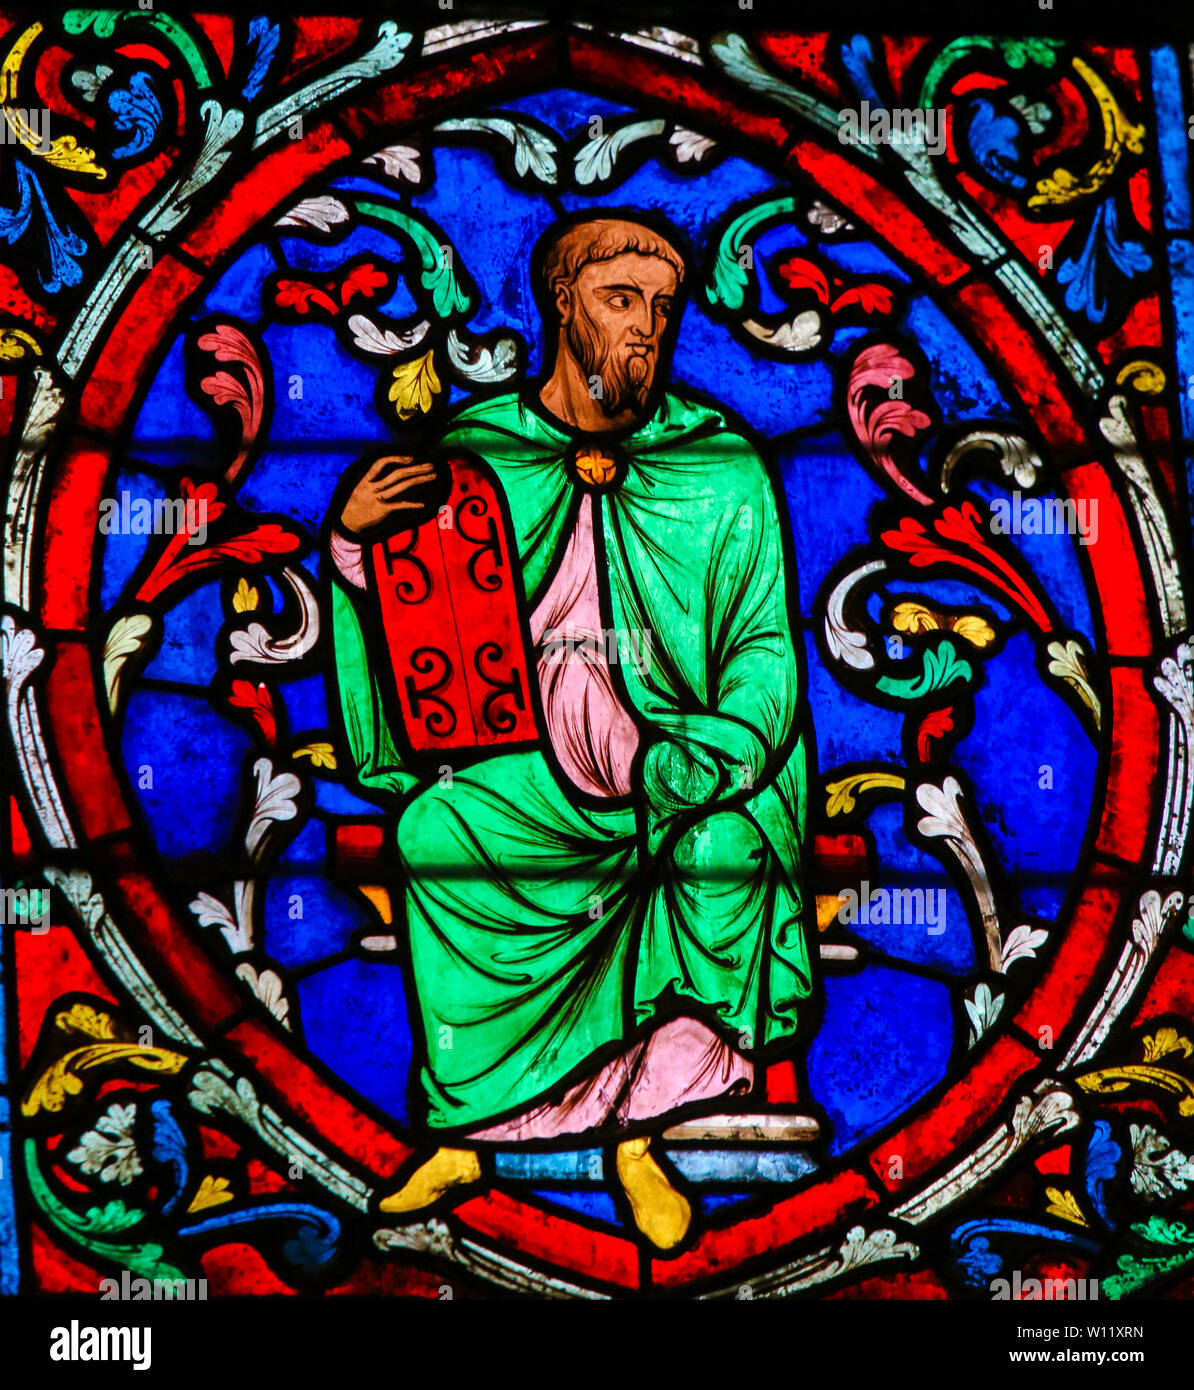 Vetro colorato nella cattedrale di Notre Dame di Parigi, Francia, raffigurante Mosè che trasportano le tavolette di pietra con i dieci comandamenti Foto Stock